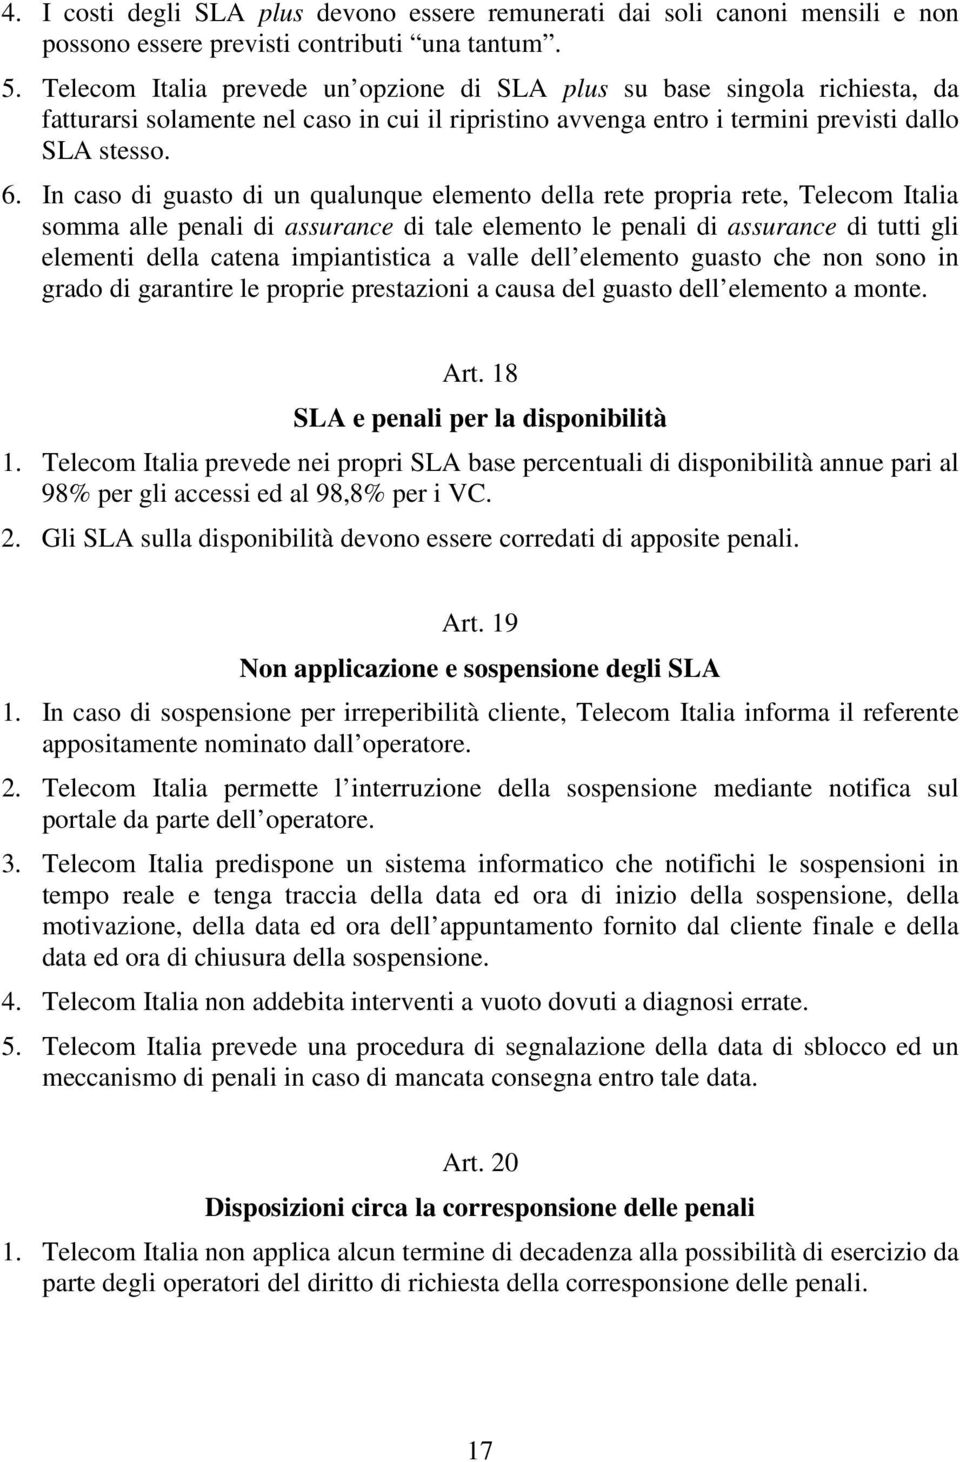 In caso di guasto di un qualunque elemento della rete propria rete, Telecom Italia somma alle penali di assurance di tale elemento le penali di assurance di tutti gli elementi della catena